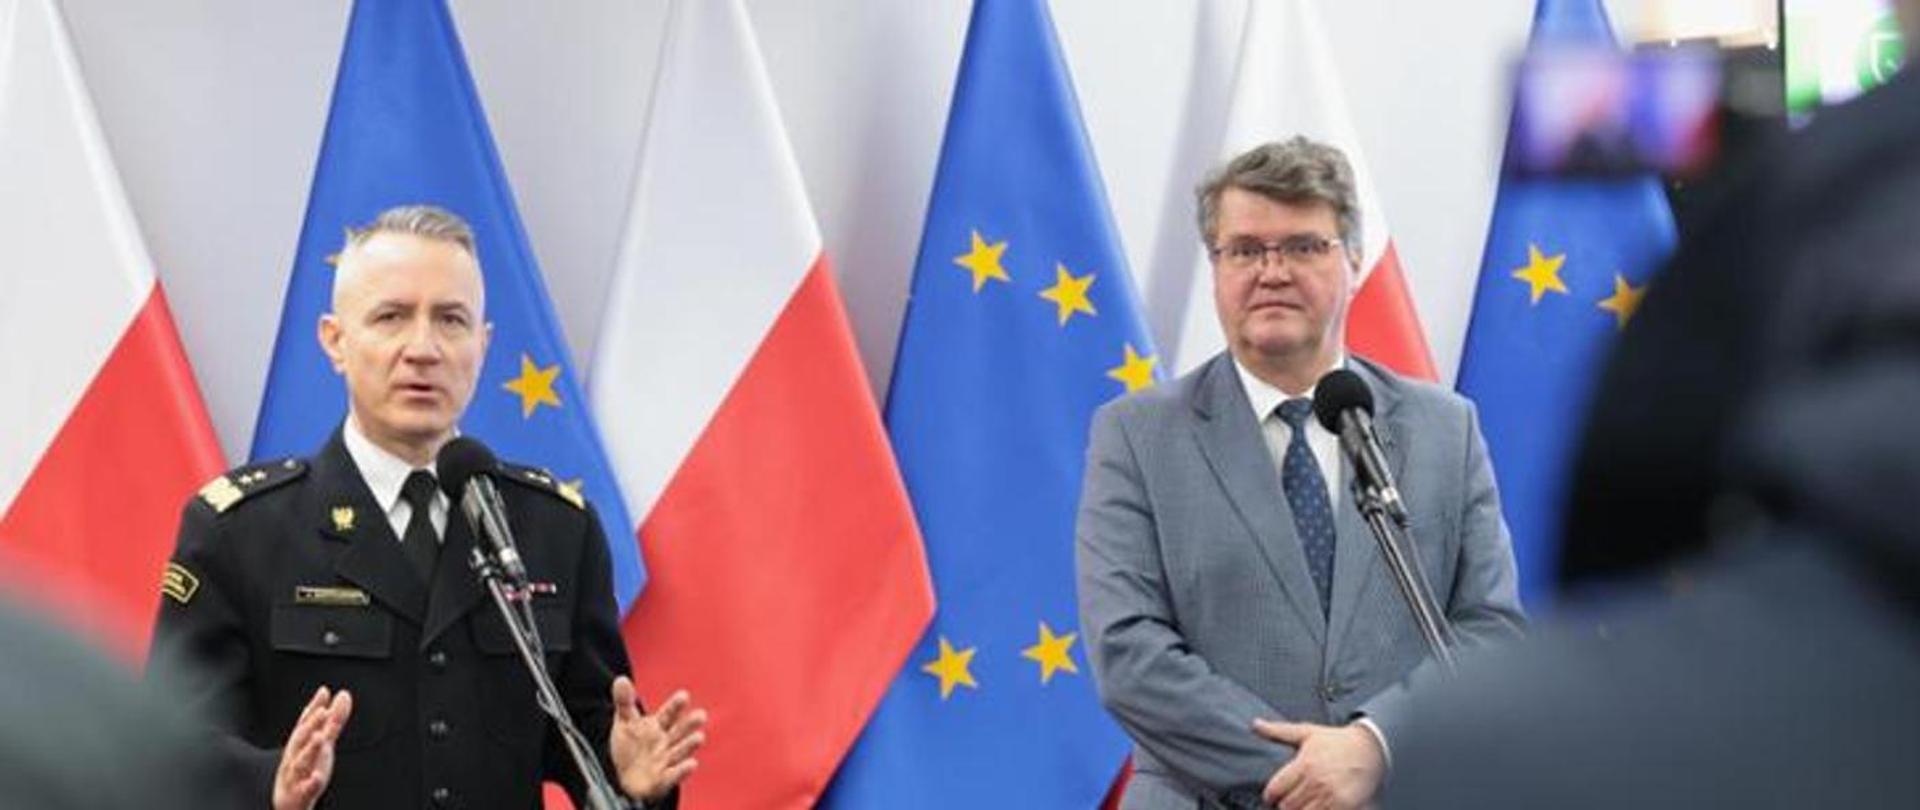 Na zdjęciu widać stojących obok siebie przed mikrofonami wiceministra Macieja Wąsika oraz gen. brygadiera Andrzeja Bartkowiaka komendanta głównego PSP. W tle flagi Polski oraz UE